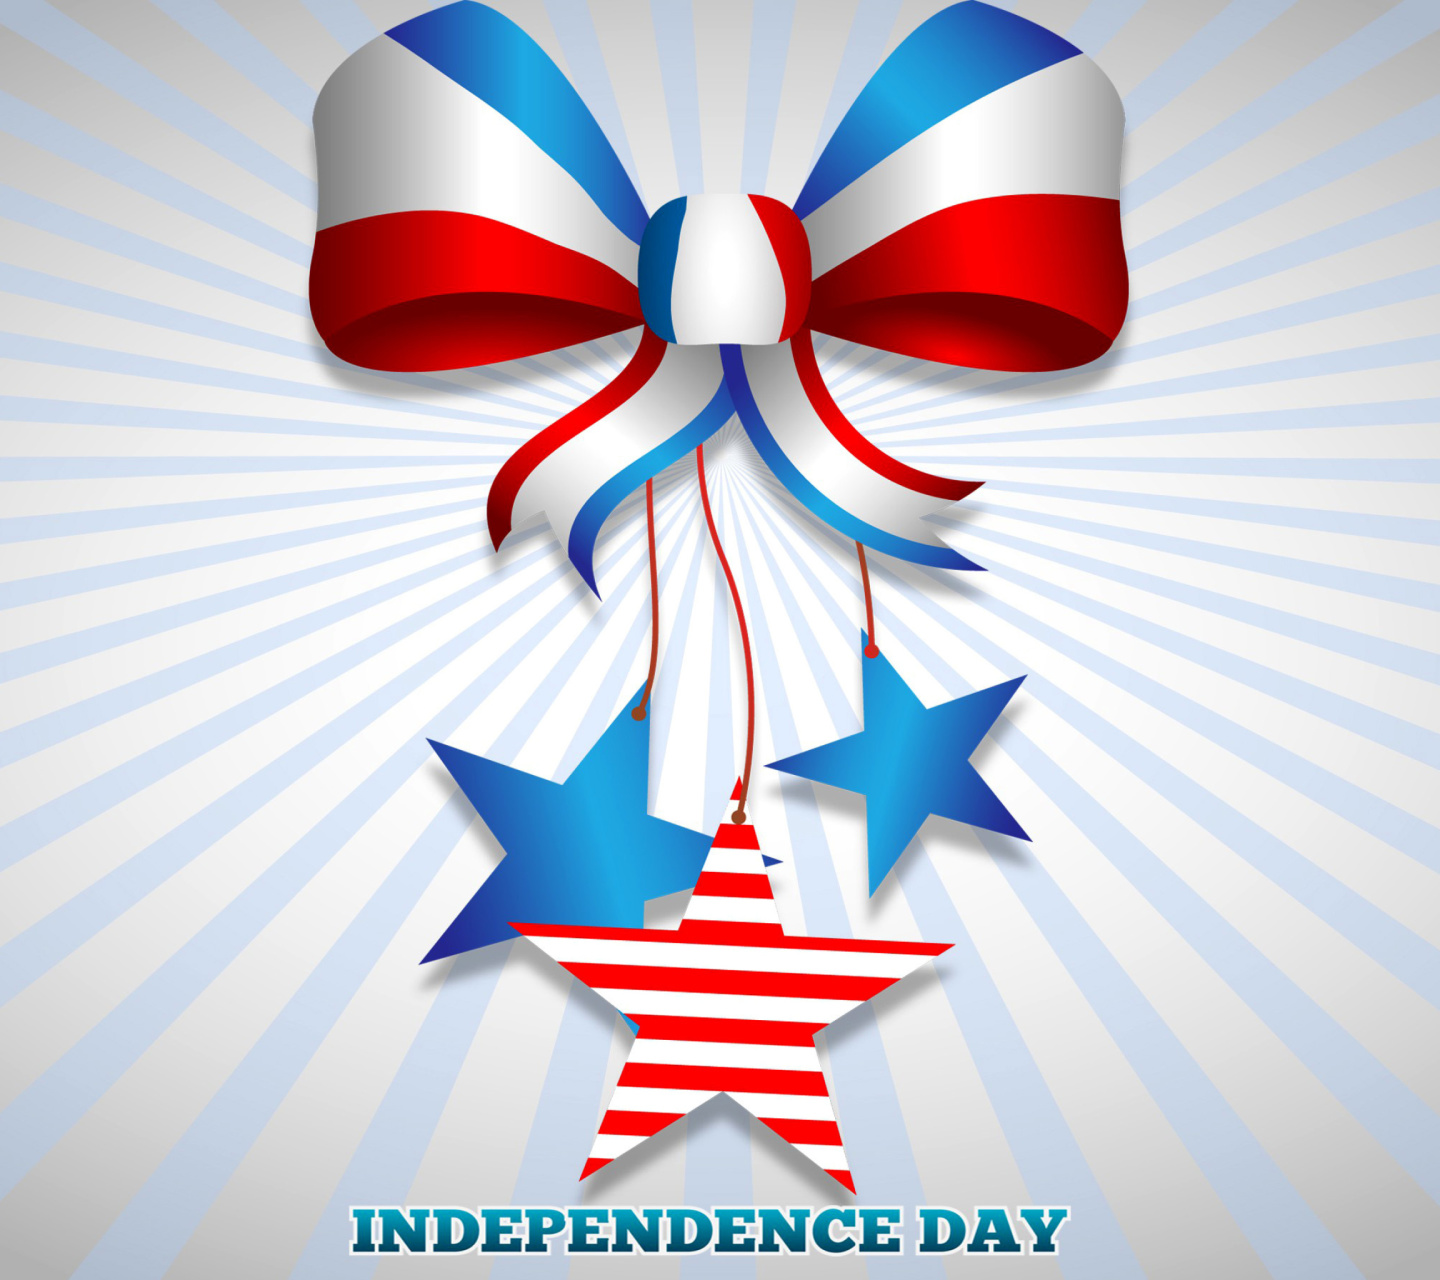 Sfondi United states america Idependence day 4th july 1440x1280